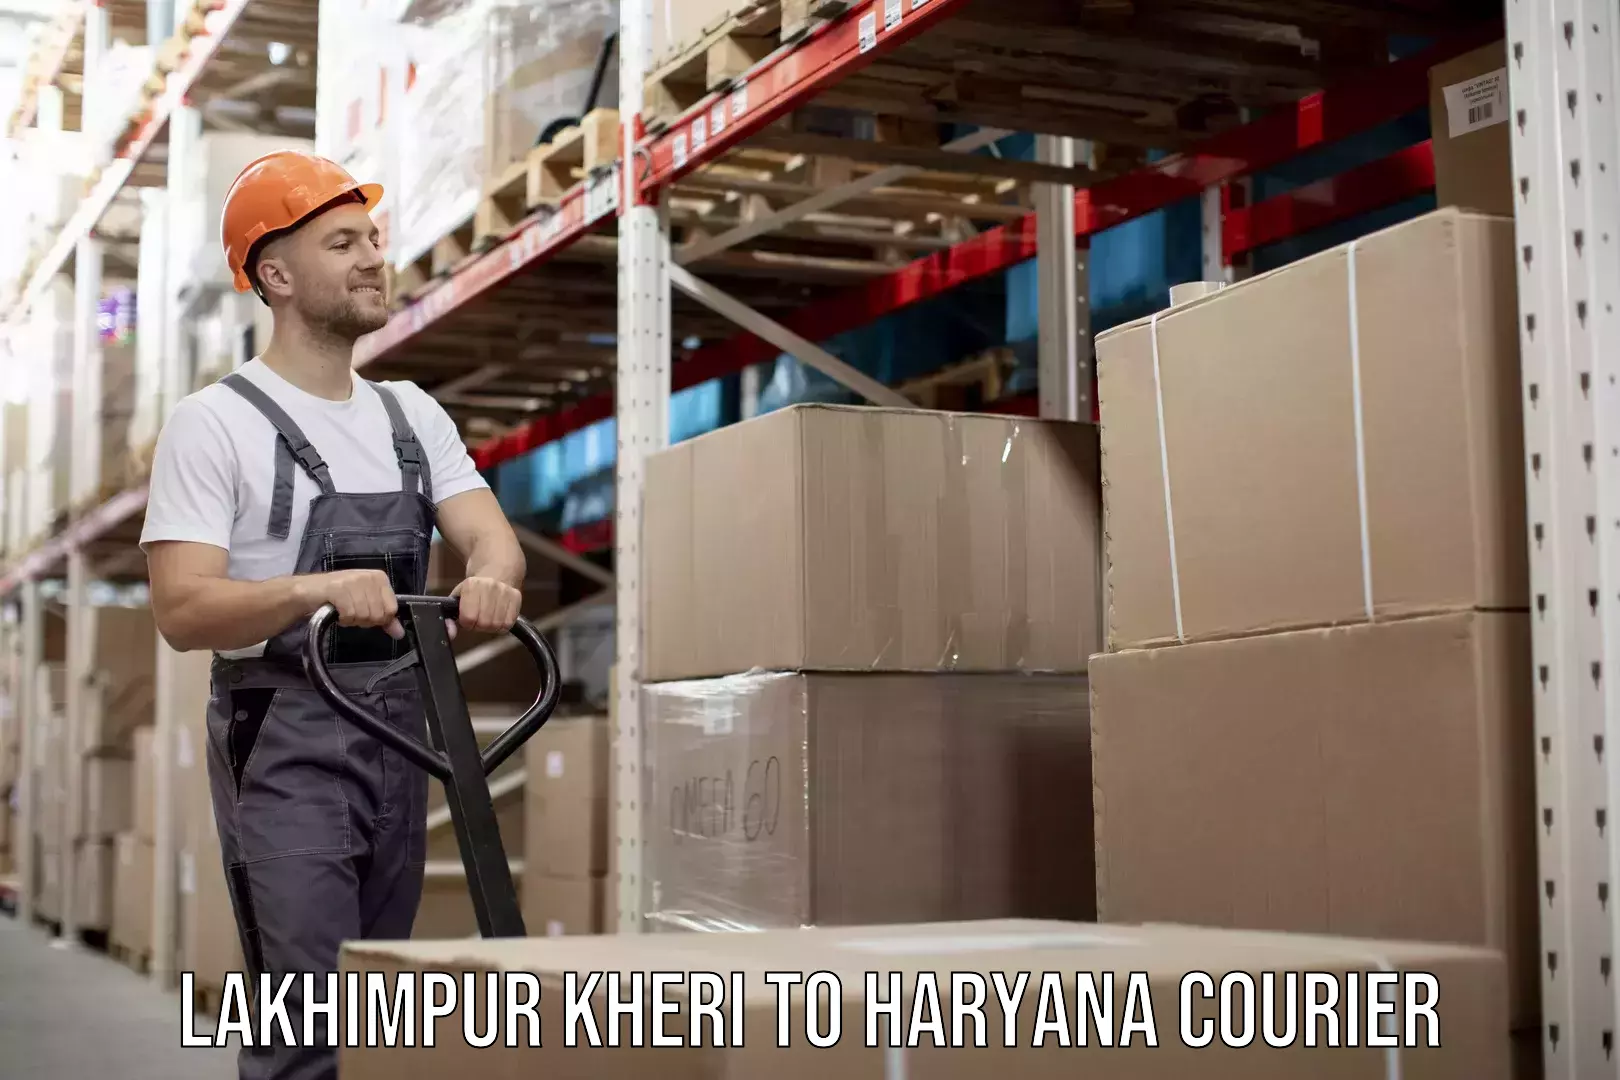 Furniture moving and handling Lakhimpur Kheri to Haryana